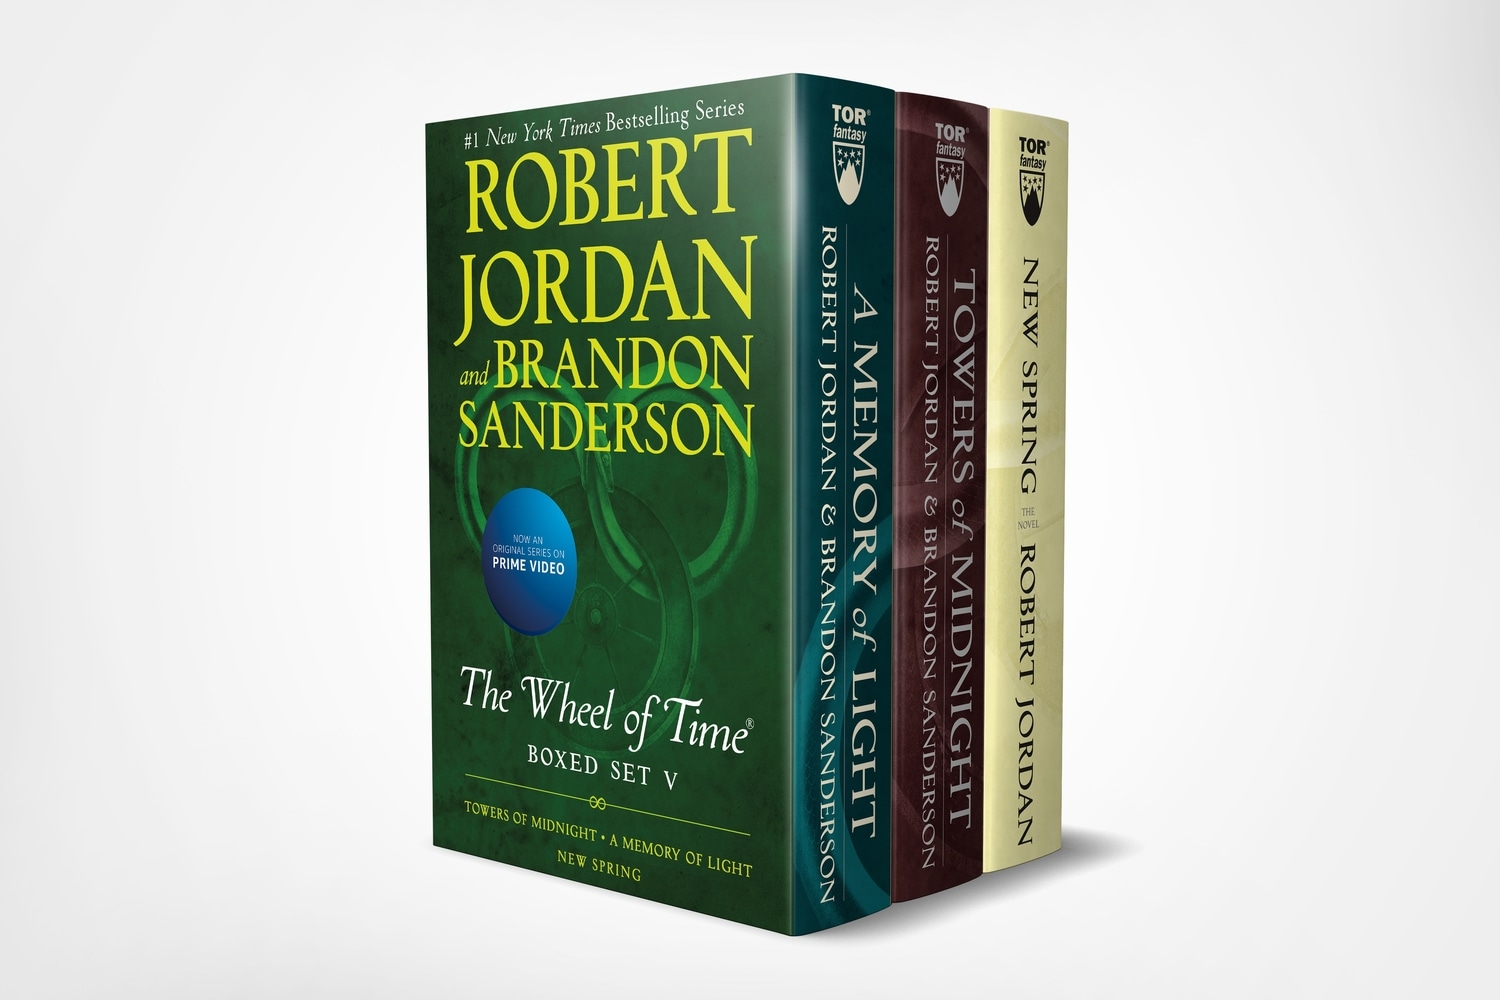 Book “Wheel of Time Premium Boxed Set V” by Robert Jordan — June 30, 2020